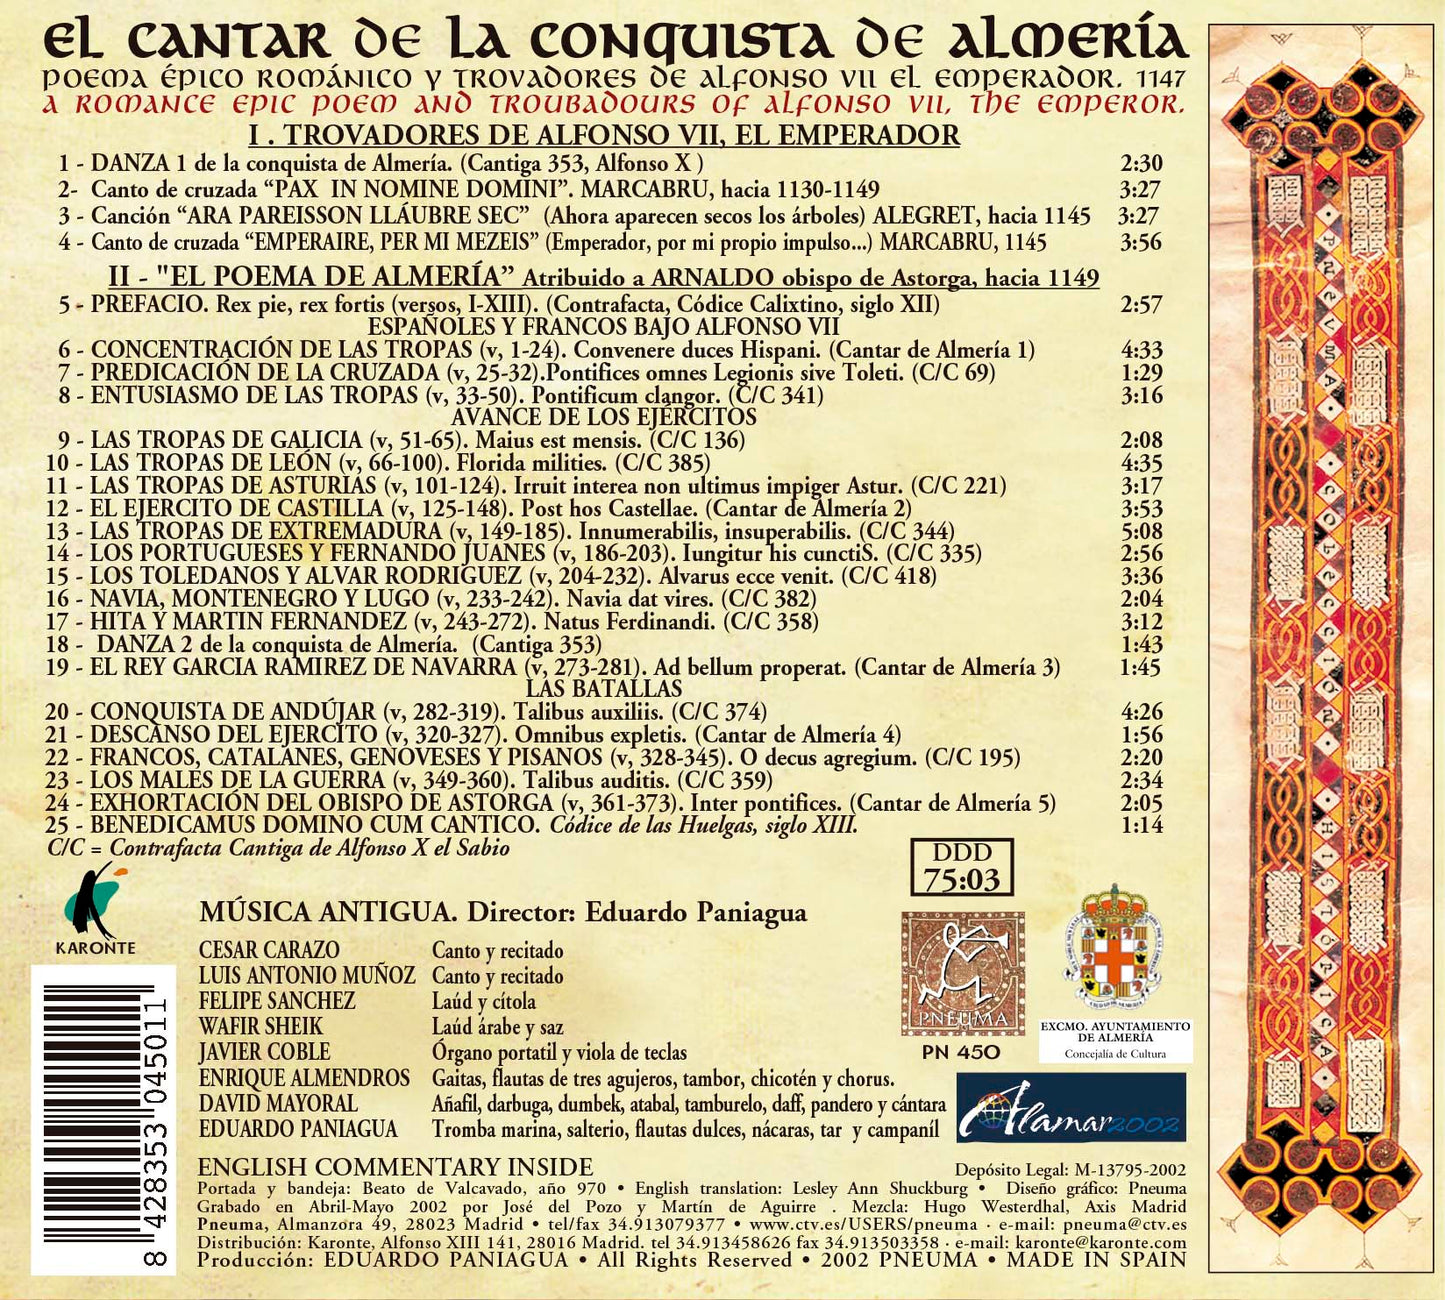 PN 450 EL CANTAR DE LA CONQUISTA DE ALMERÍA  POEMA ÉPICO ROMÁNICO Y TROVADORES DE ALFONSO VII DE LEÓNEL EMPERADOR. 1147